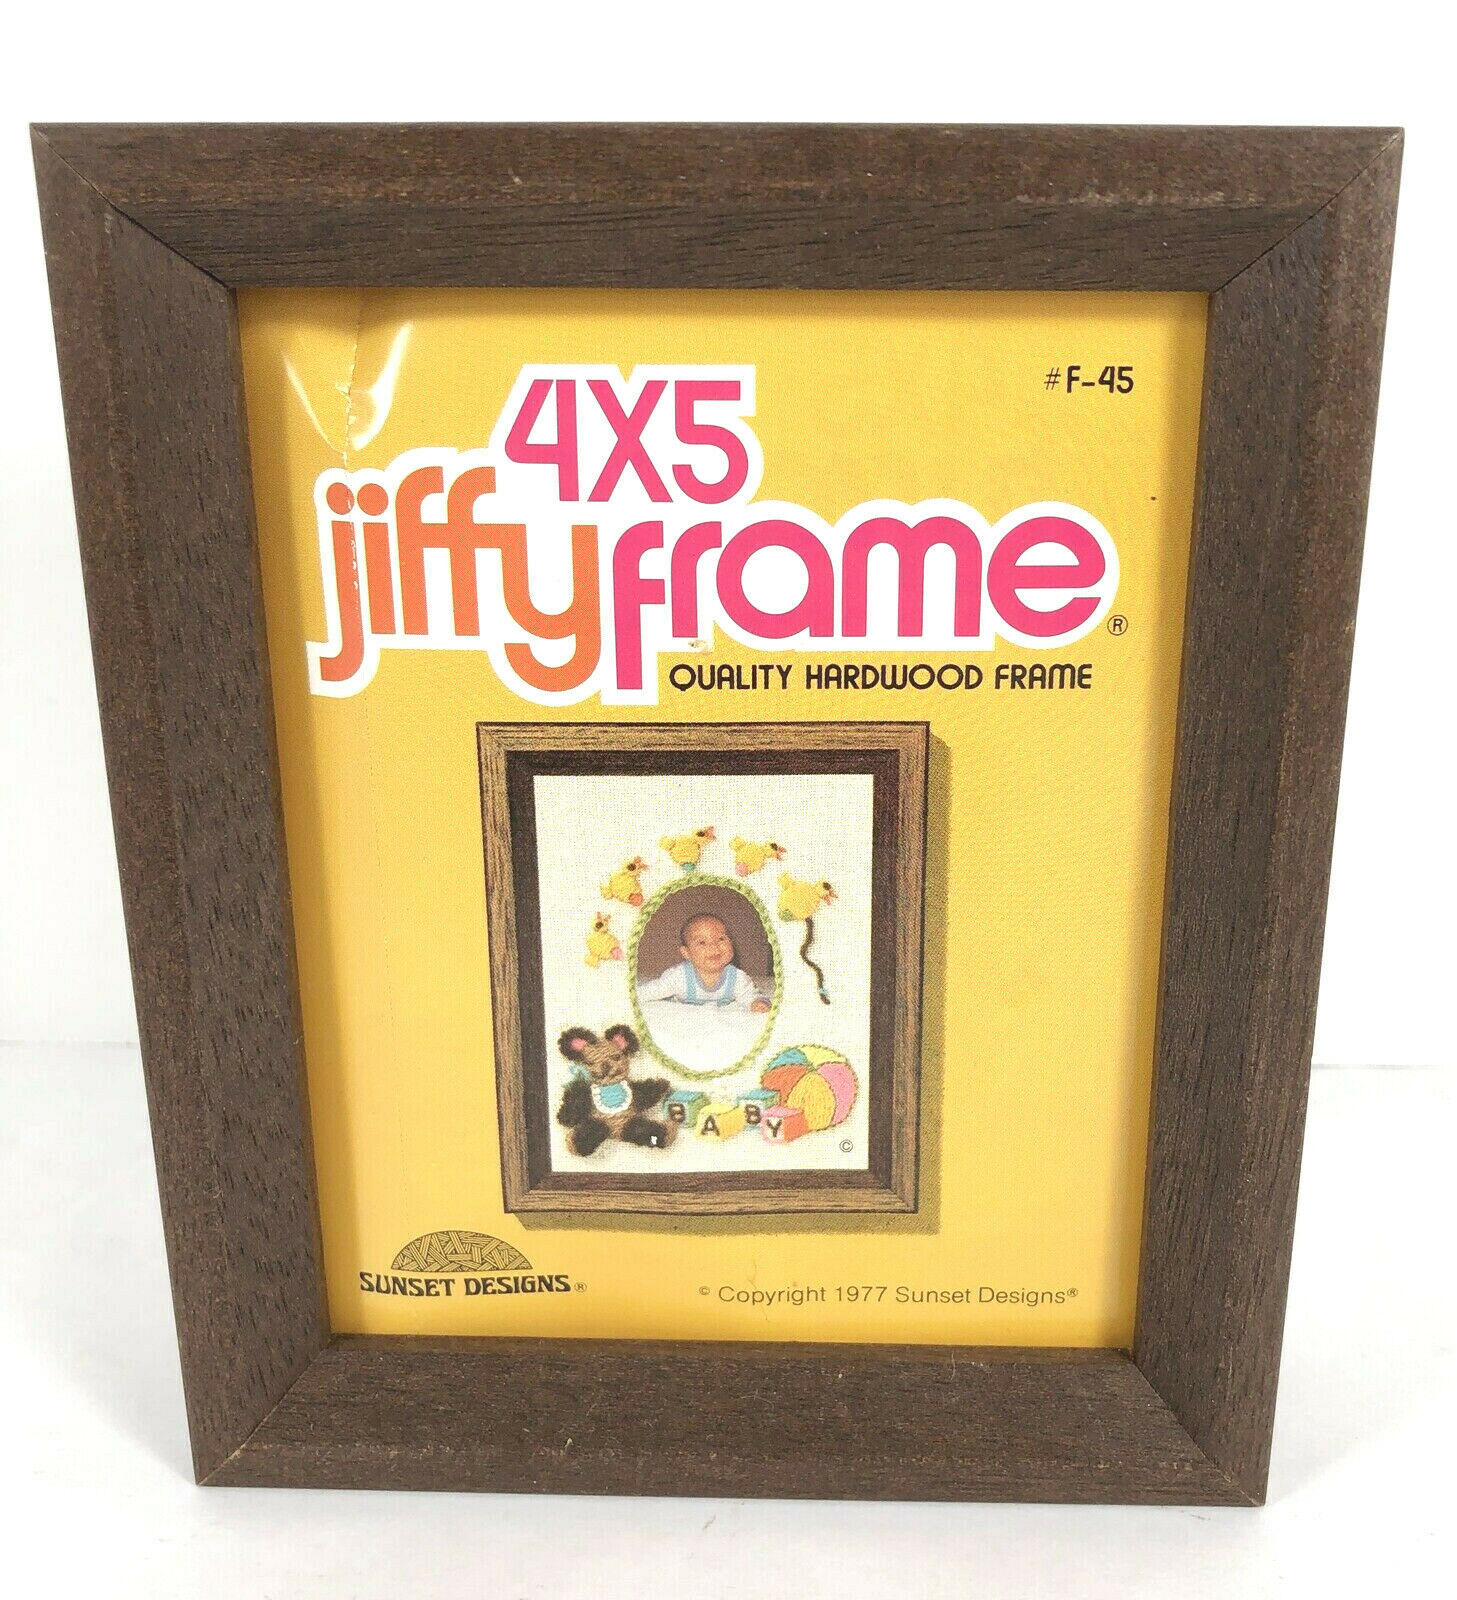 Jiffy Frame 4X5 HARDWOOD FRAME Vintage 1977 Sunset Designs F-45 NOS Never Used - $18.80